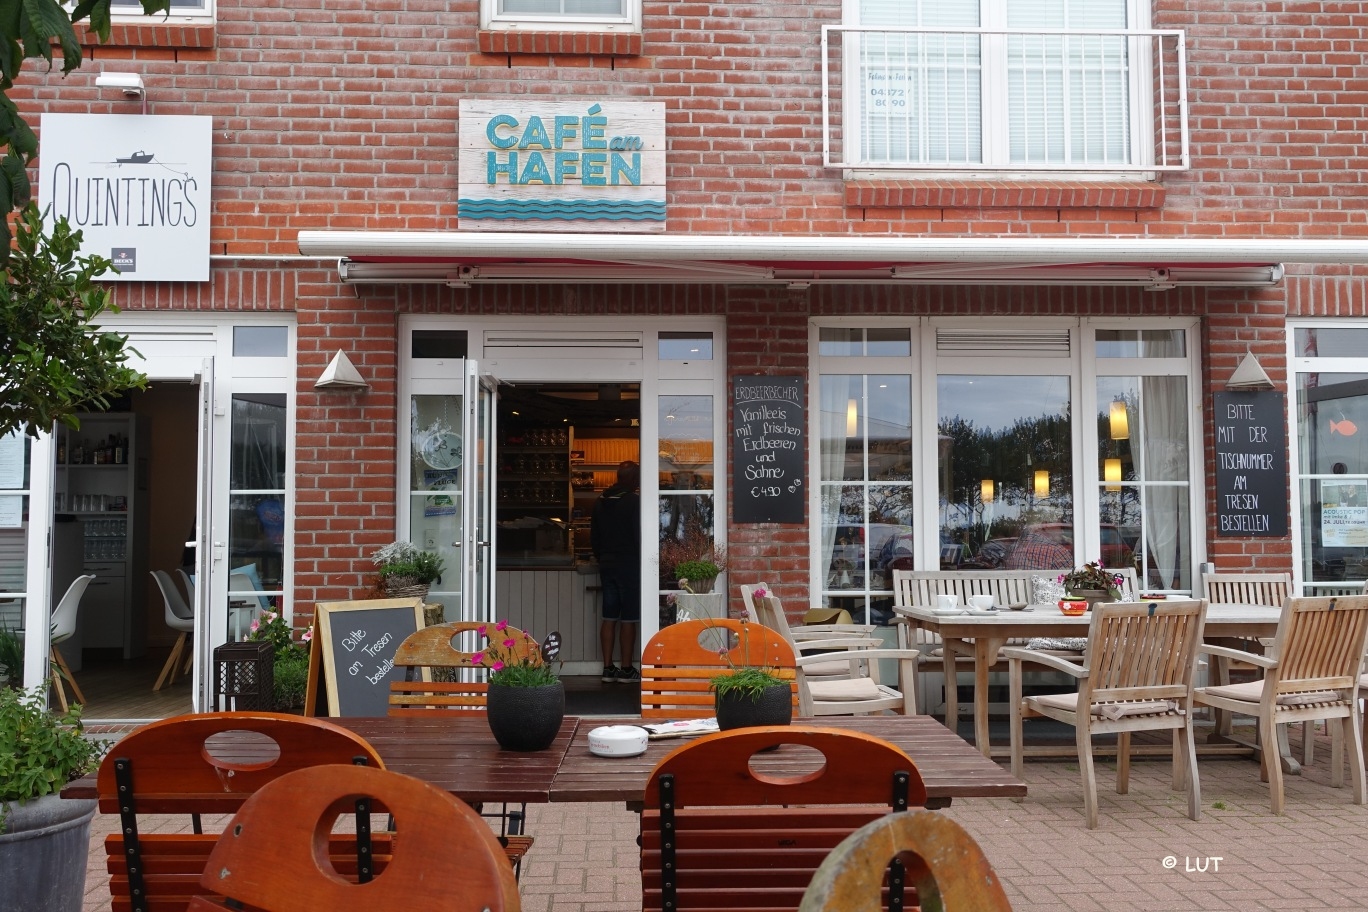 Café am Hafen, Orth auf Fehmarn